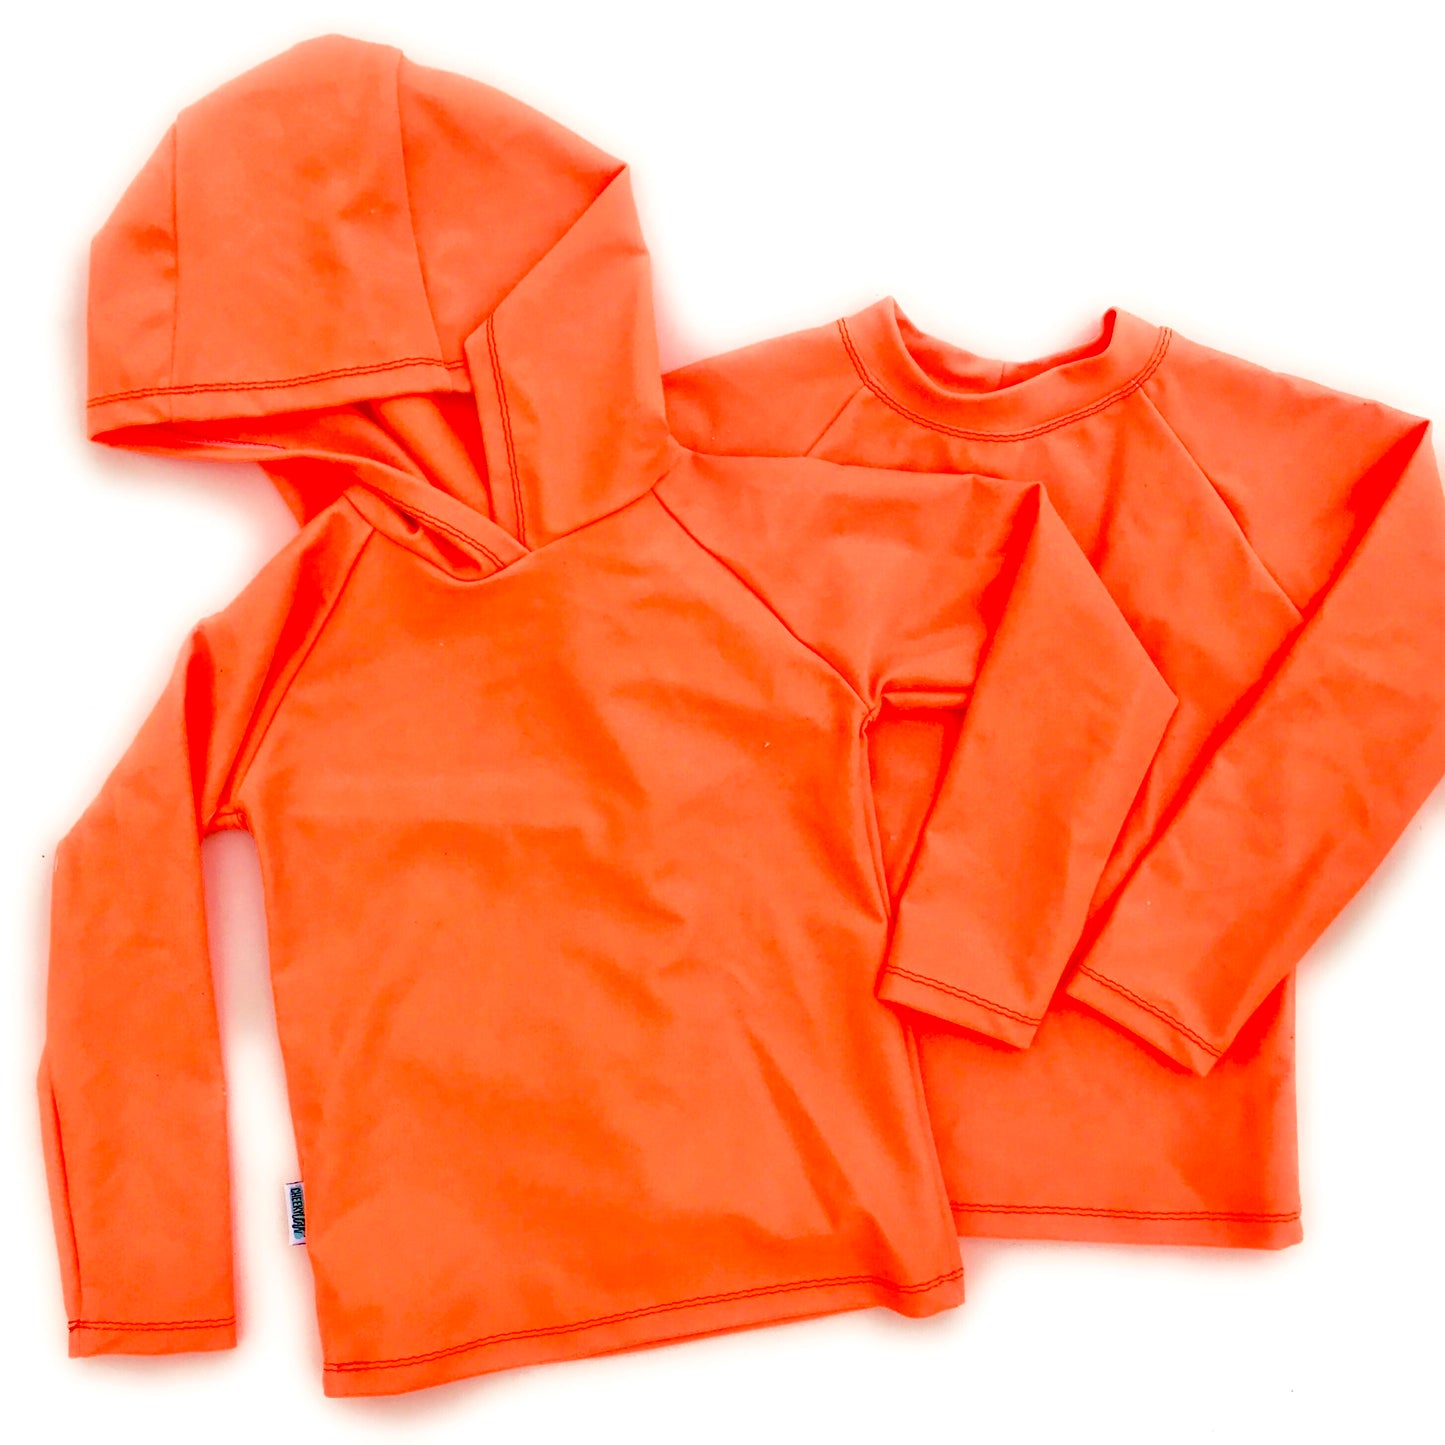 Cheeky Cloth Neon Orange Rashguard